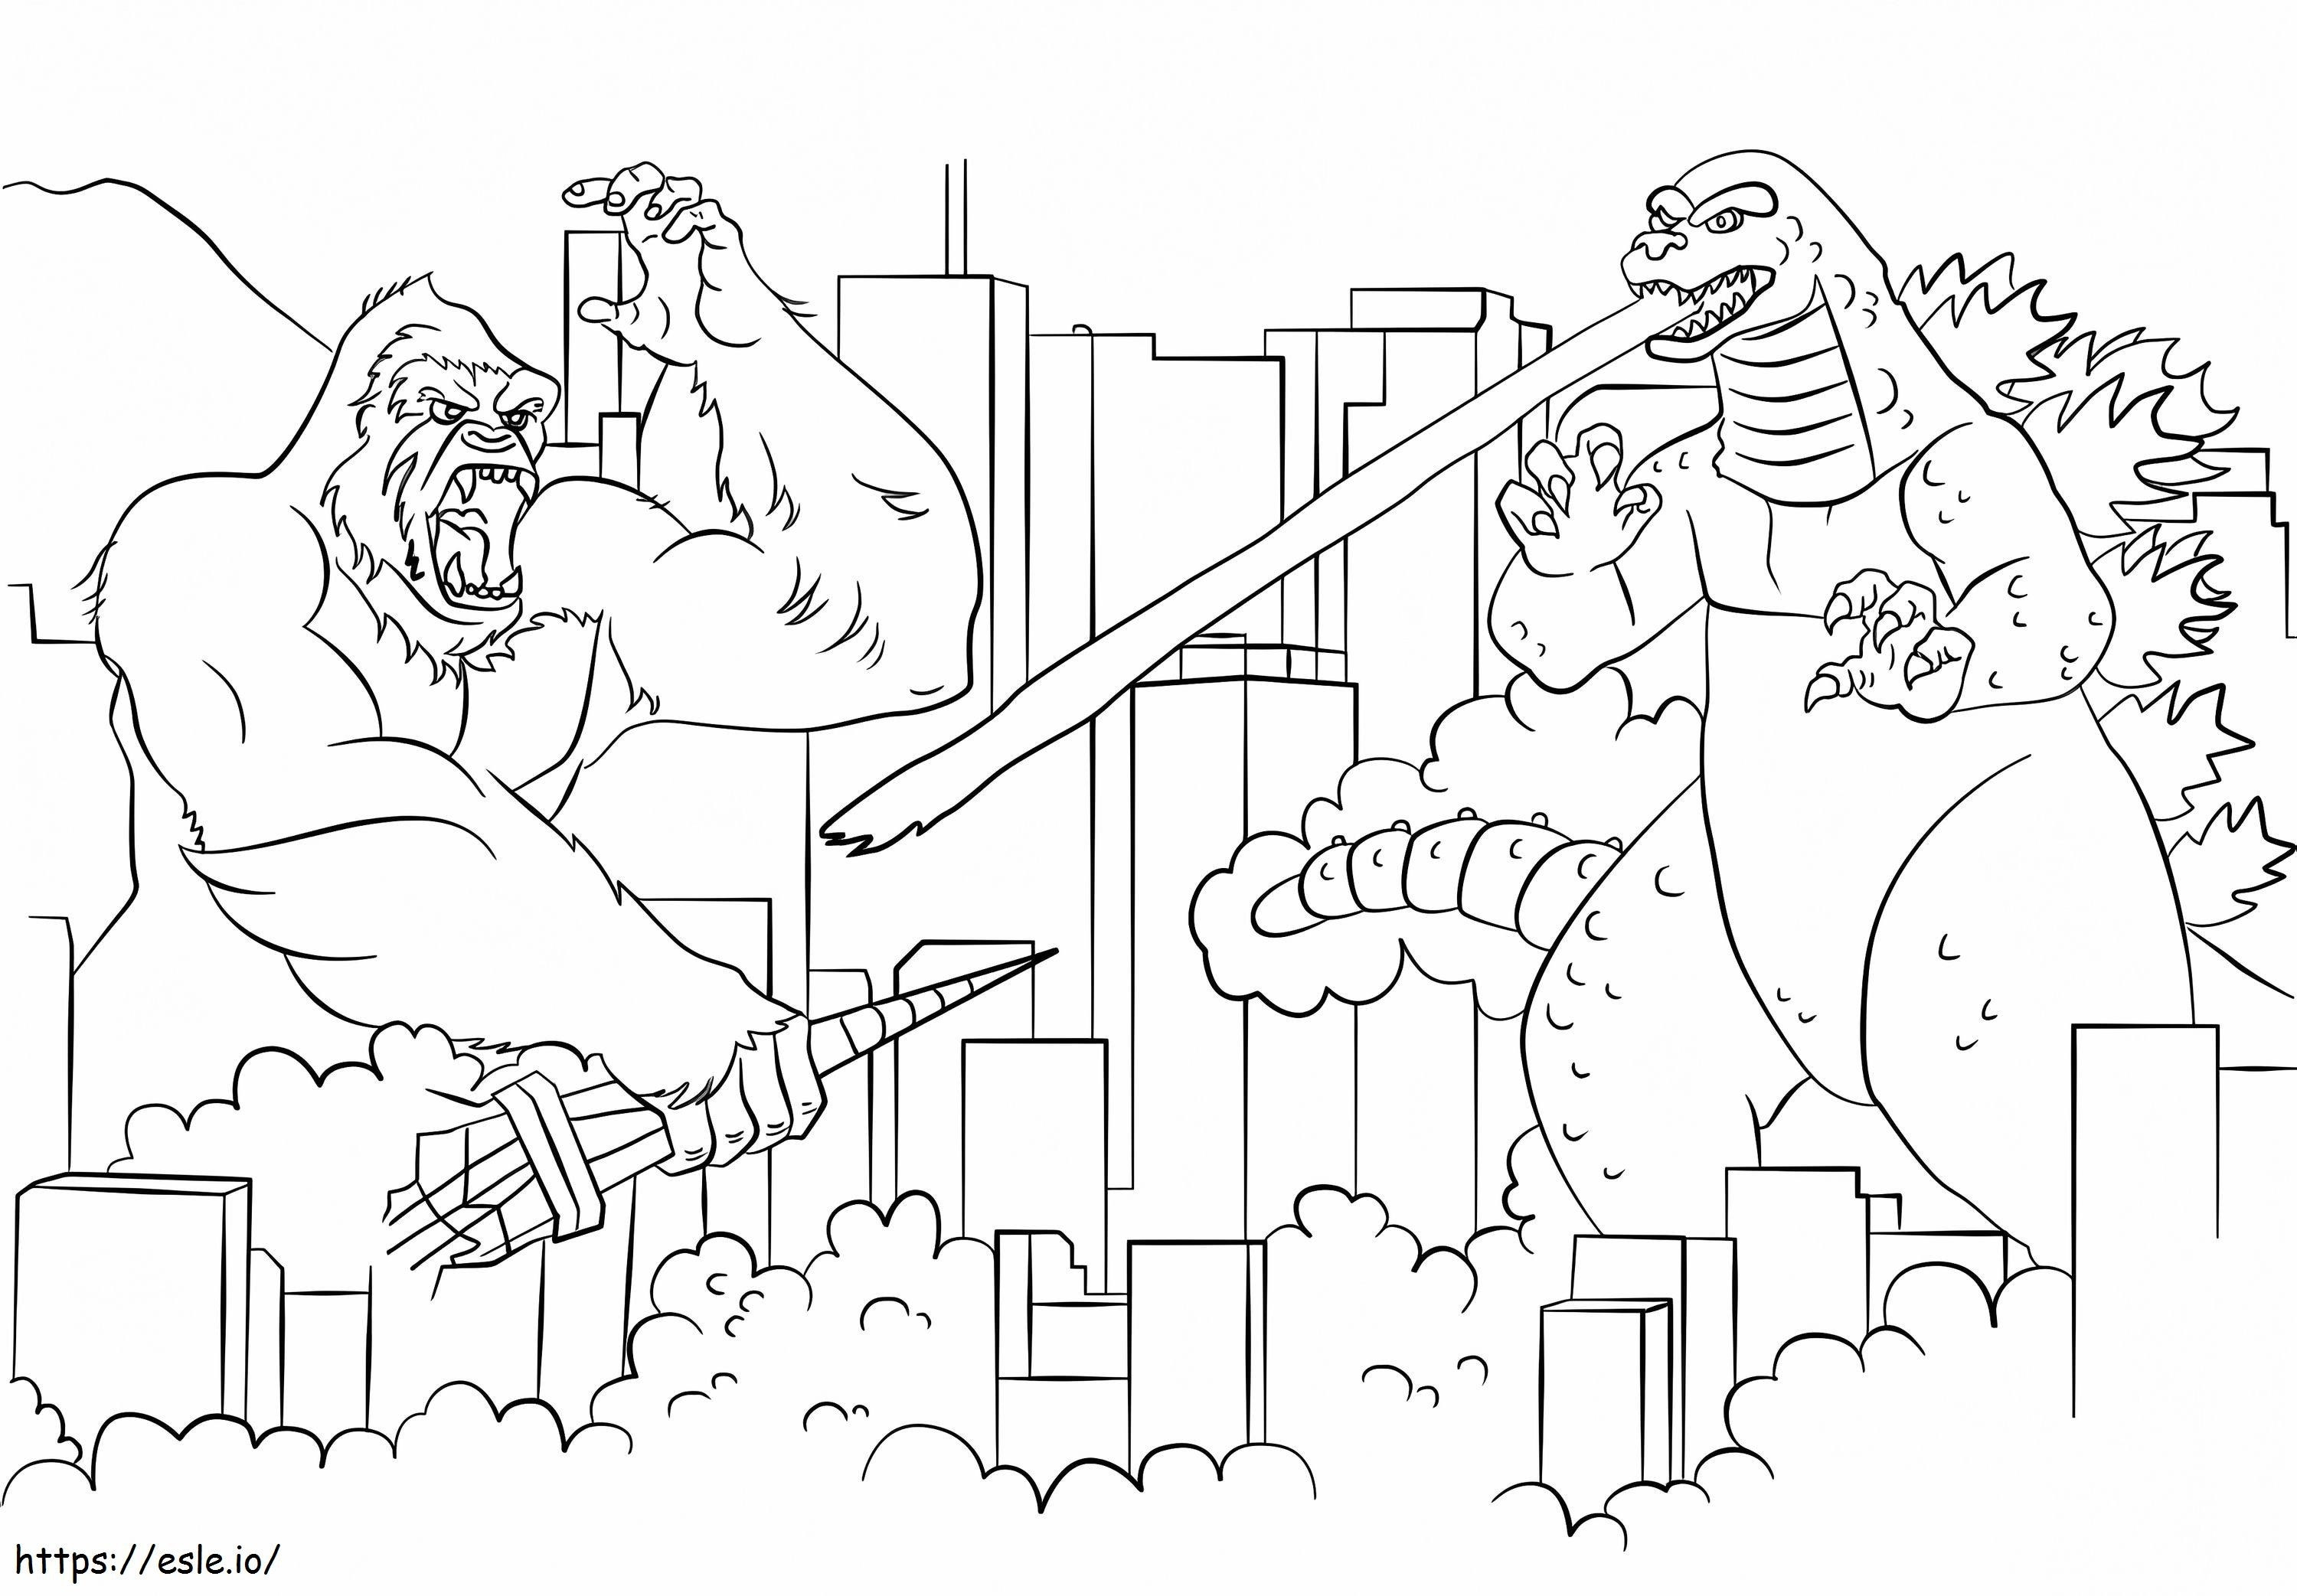 Godzilla kontra Kong 4 kolorowanka